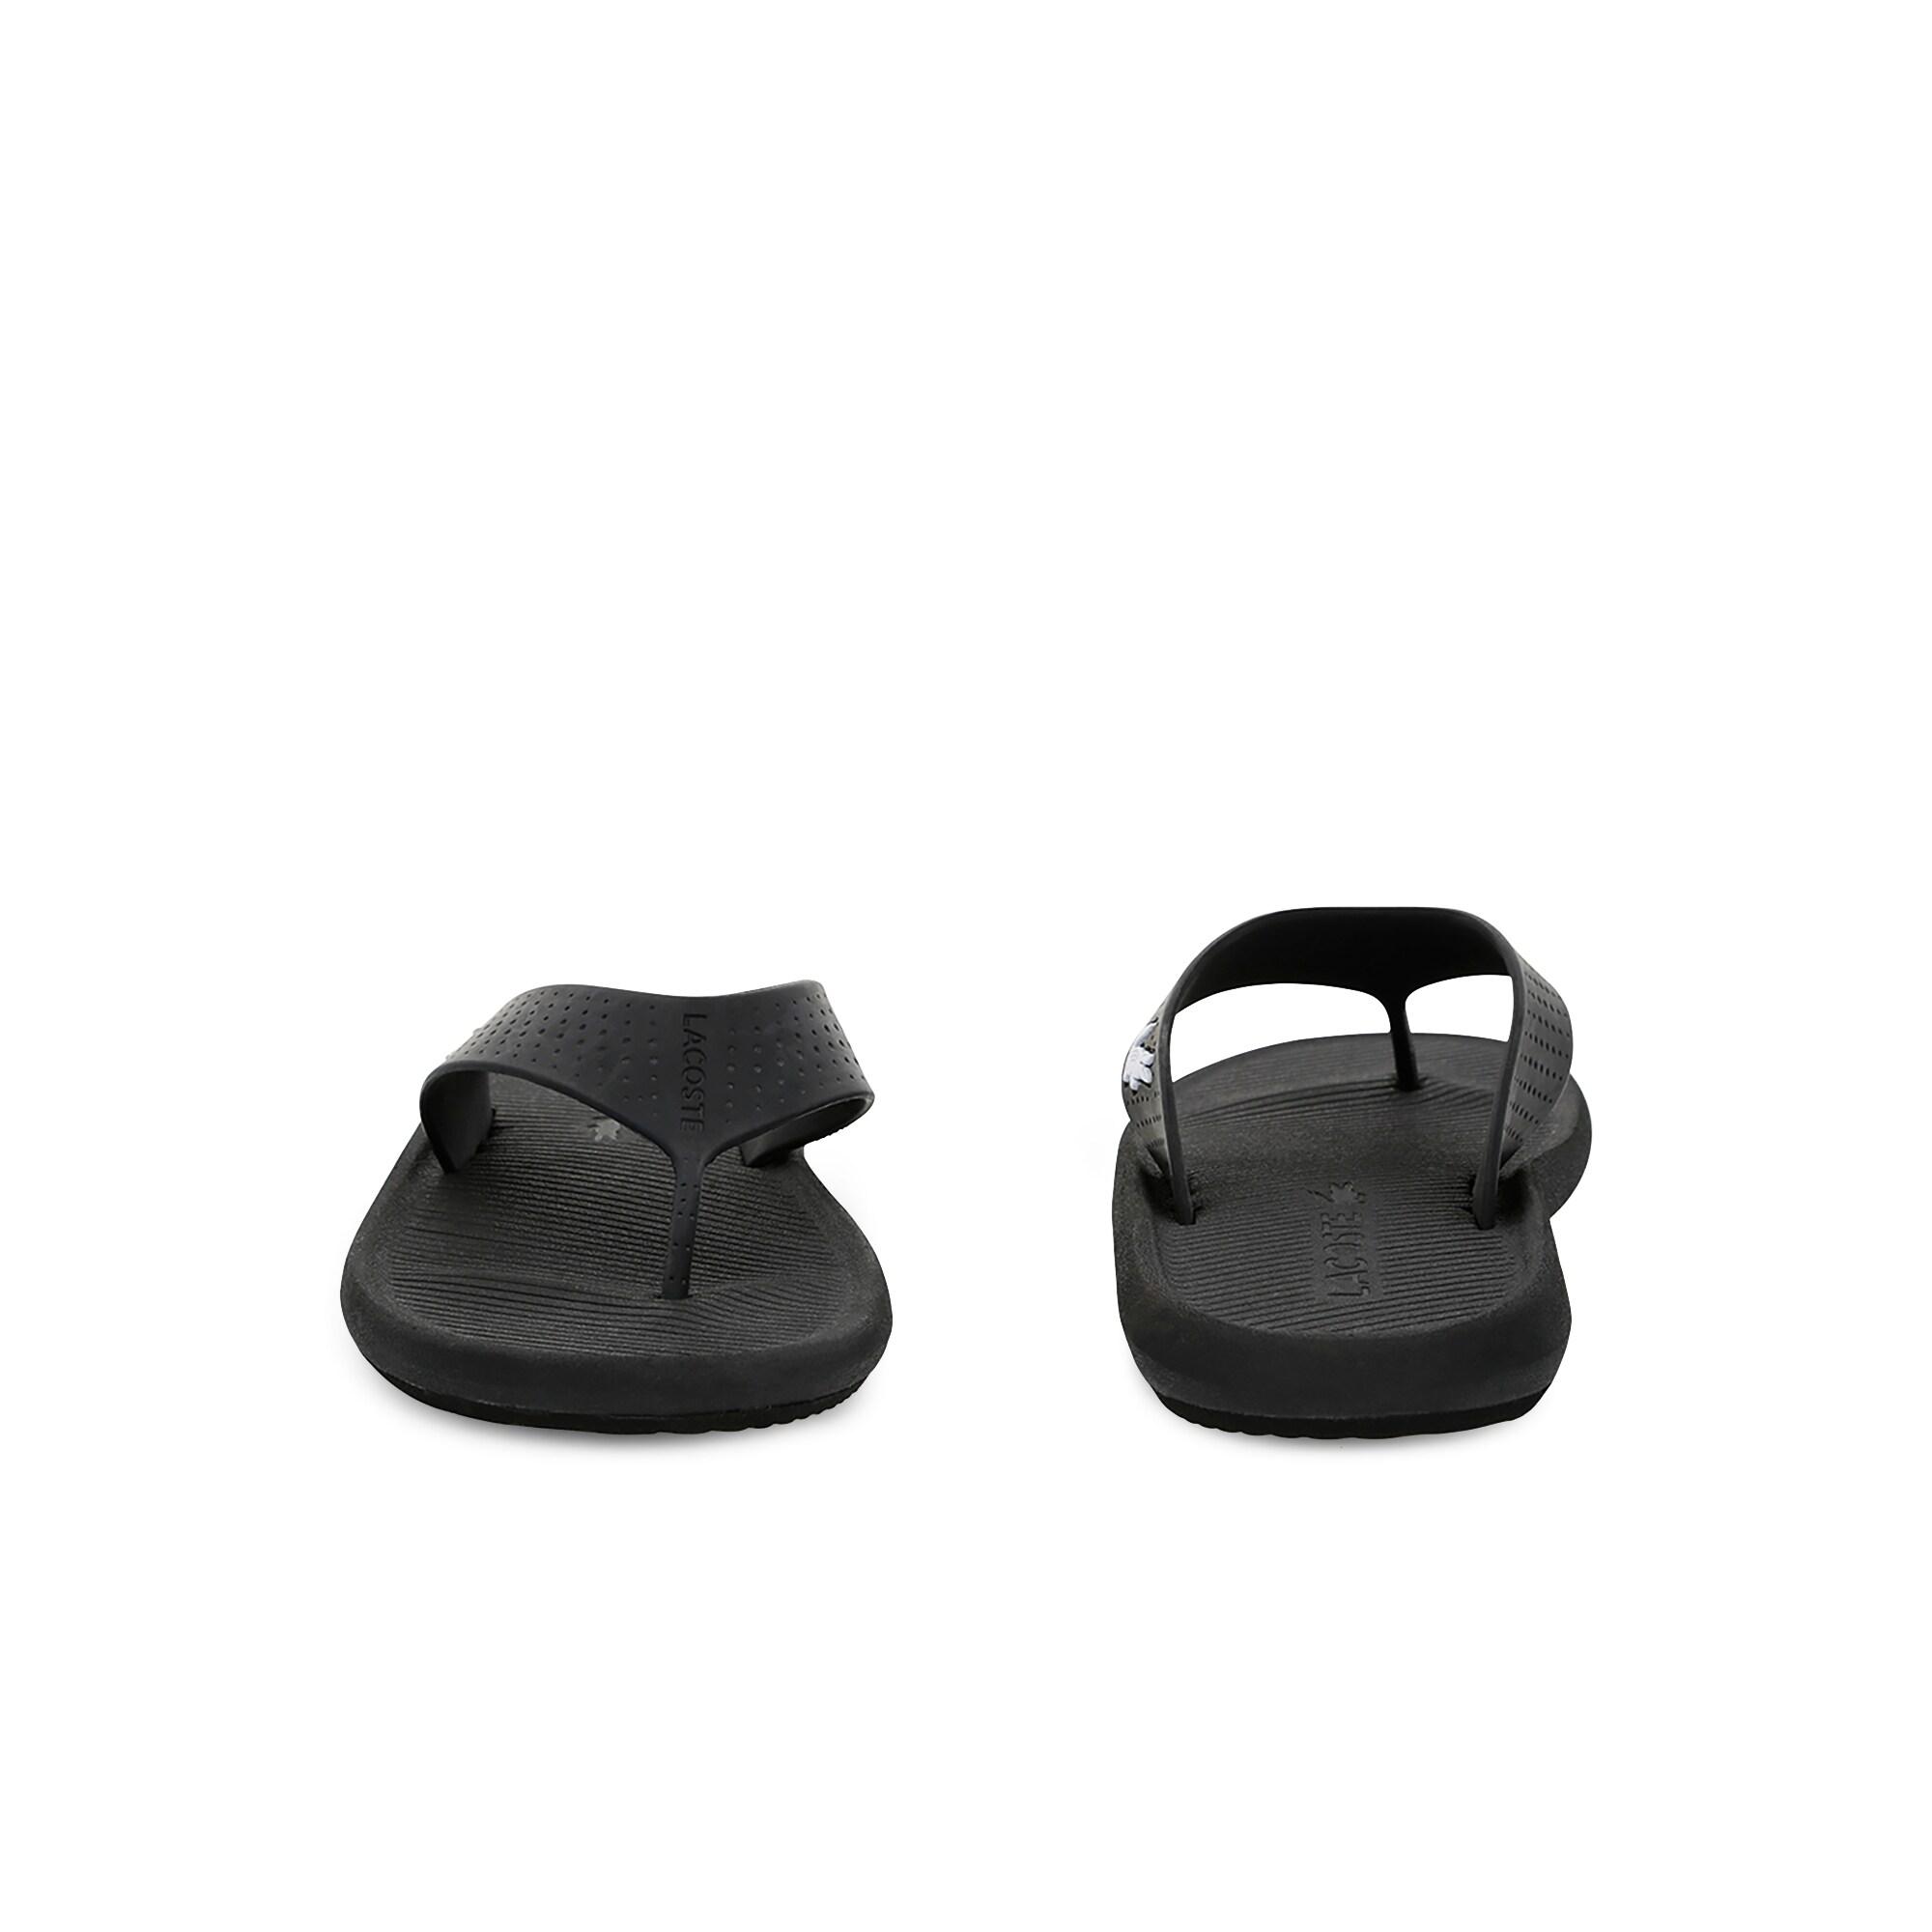 Lacoste Croco Sandal 219 1 Cma Erkek Siyah - Beyaz Terlik. 6